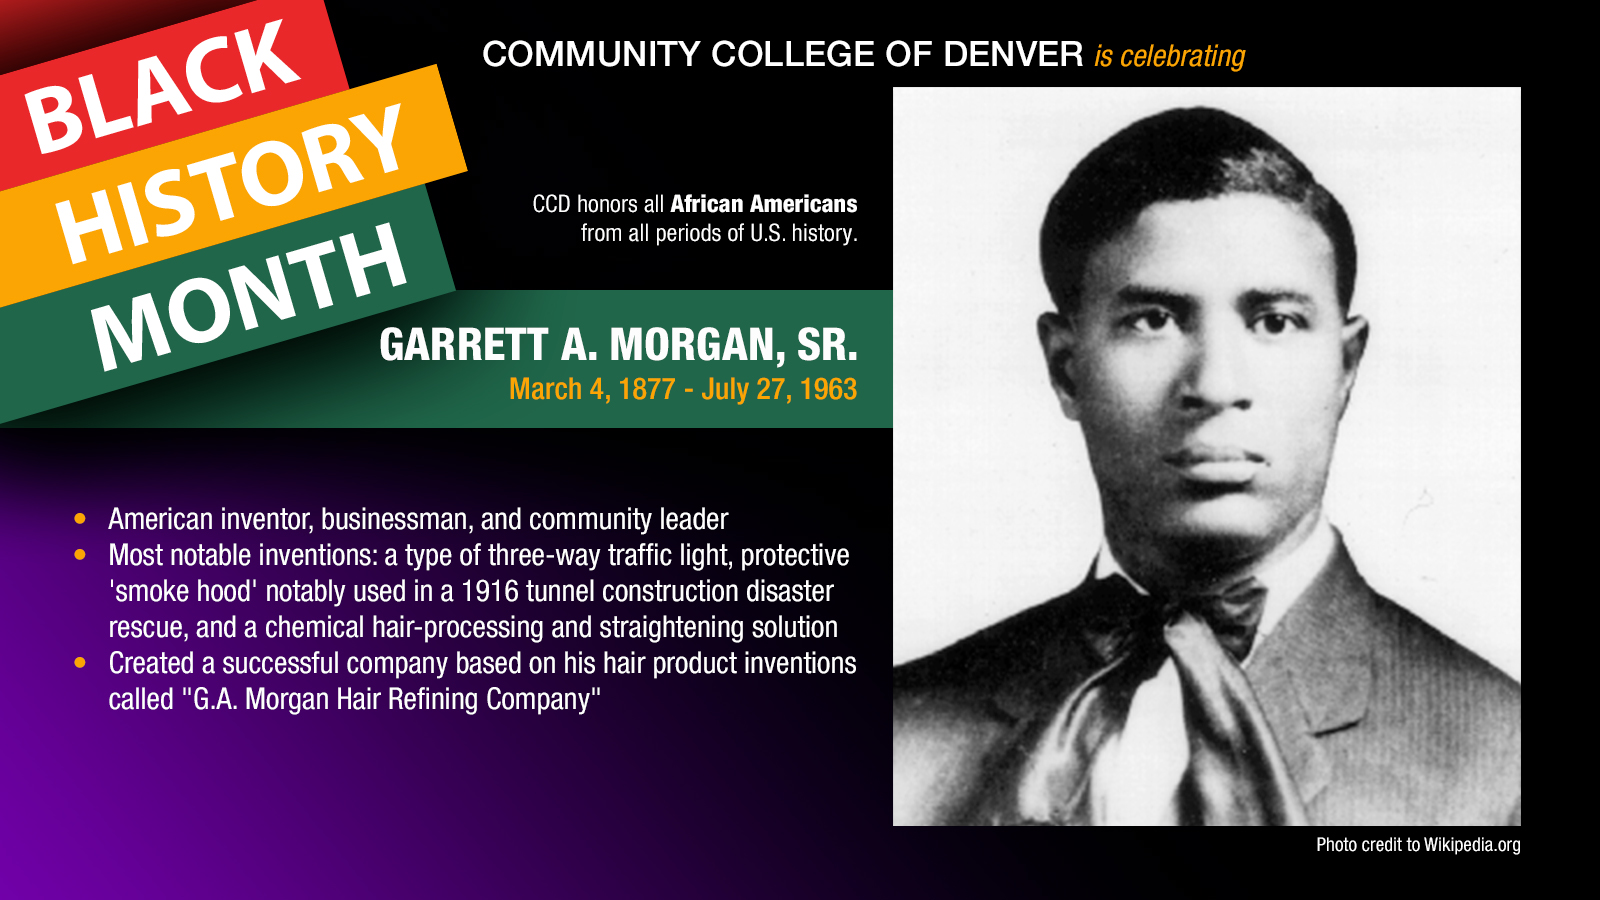 Black History Month. Garrett A. Morgan, SR. facts.